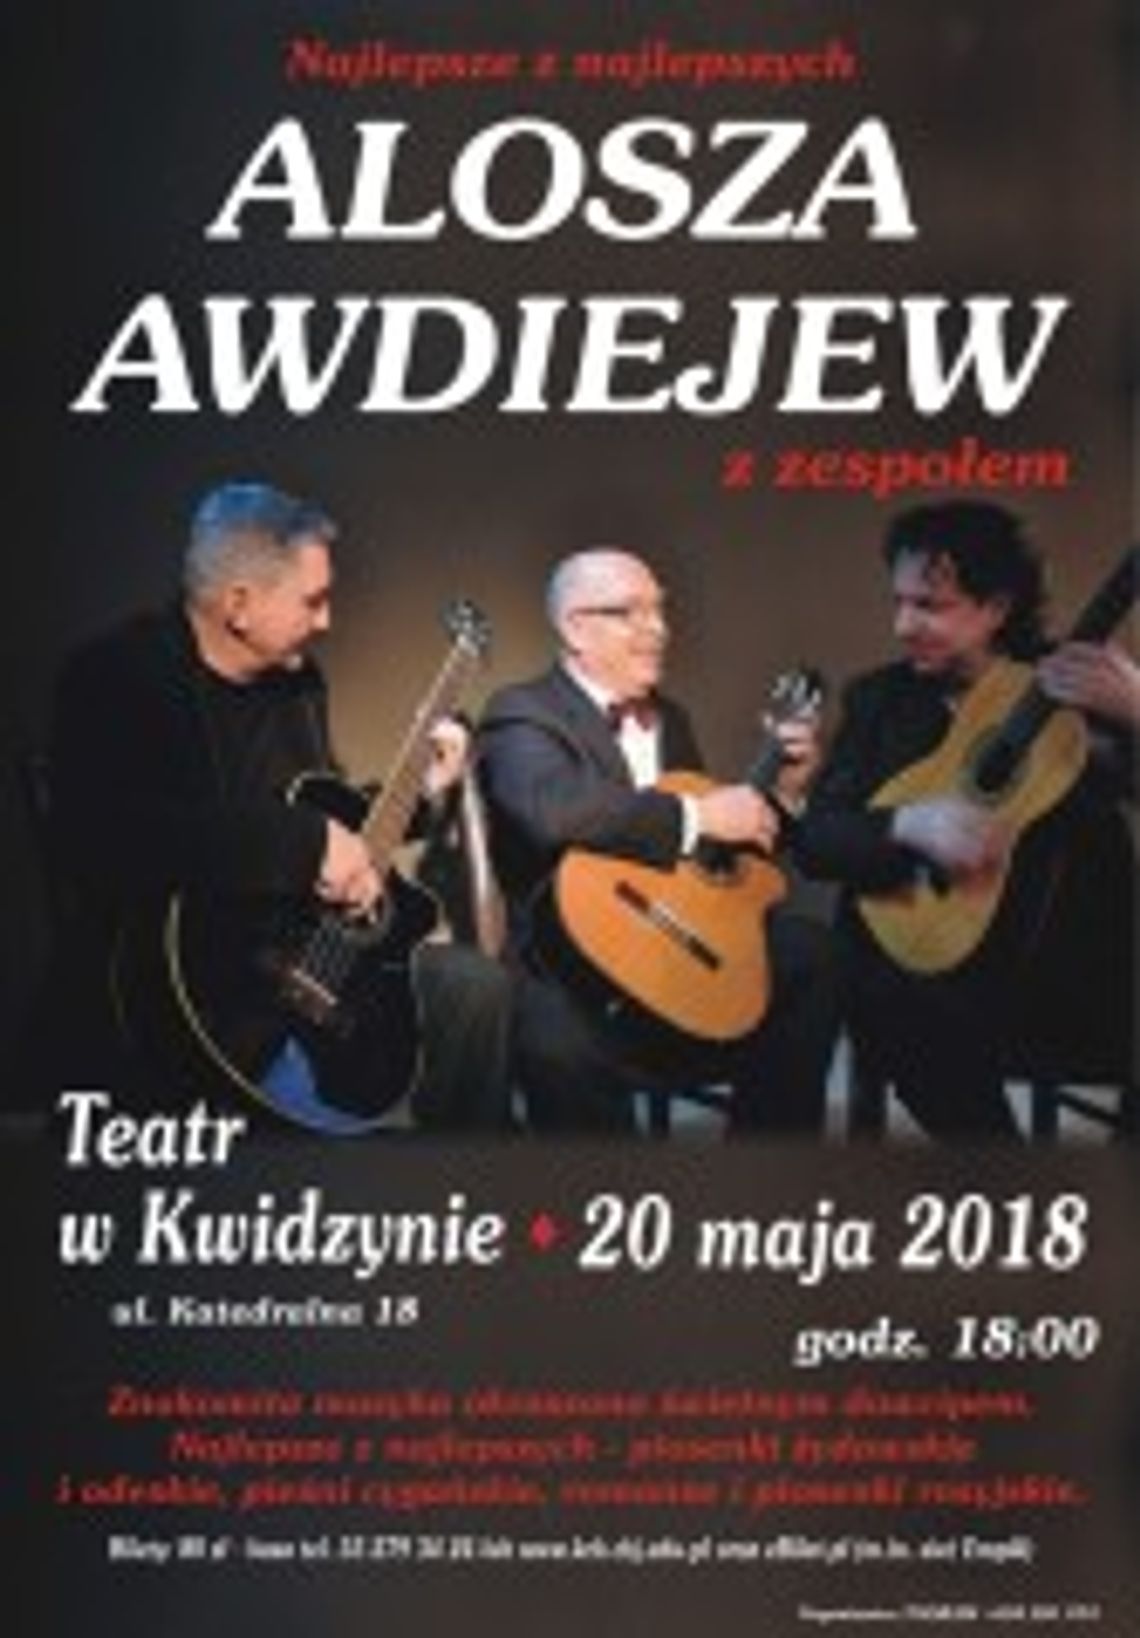 TEATR: Alosza Awdiejew - koncert.